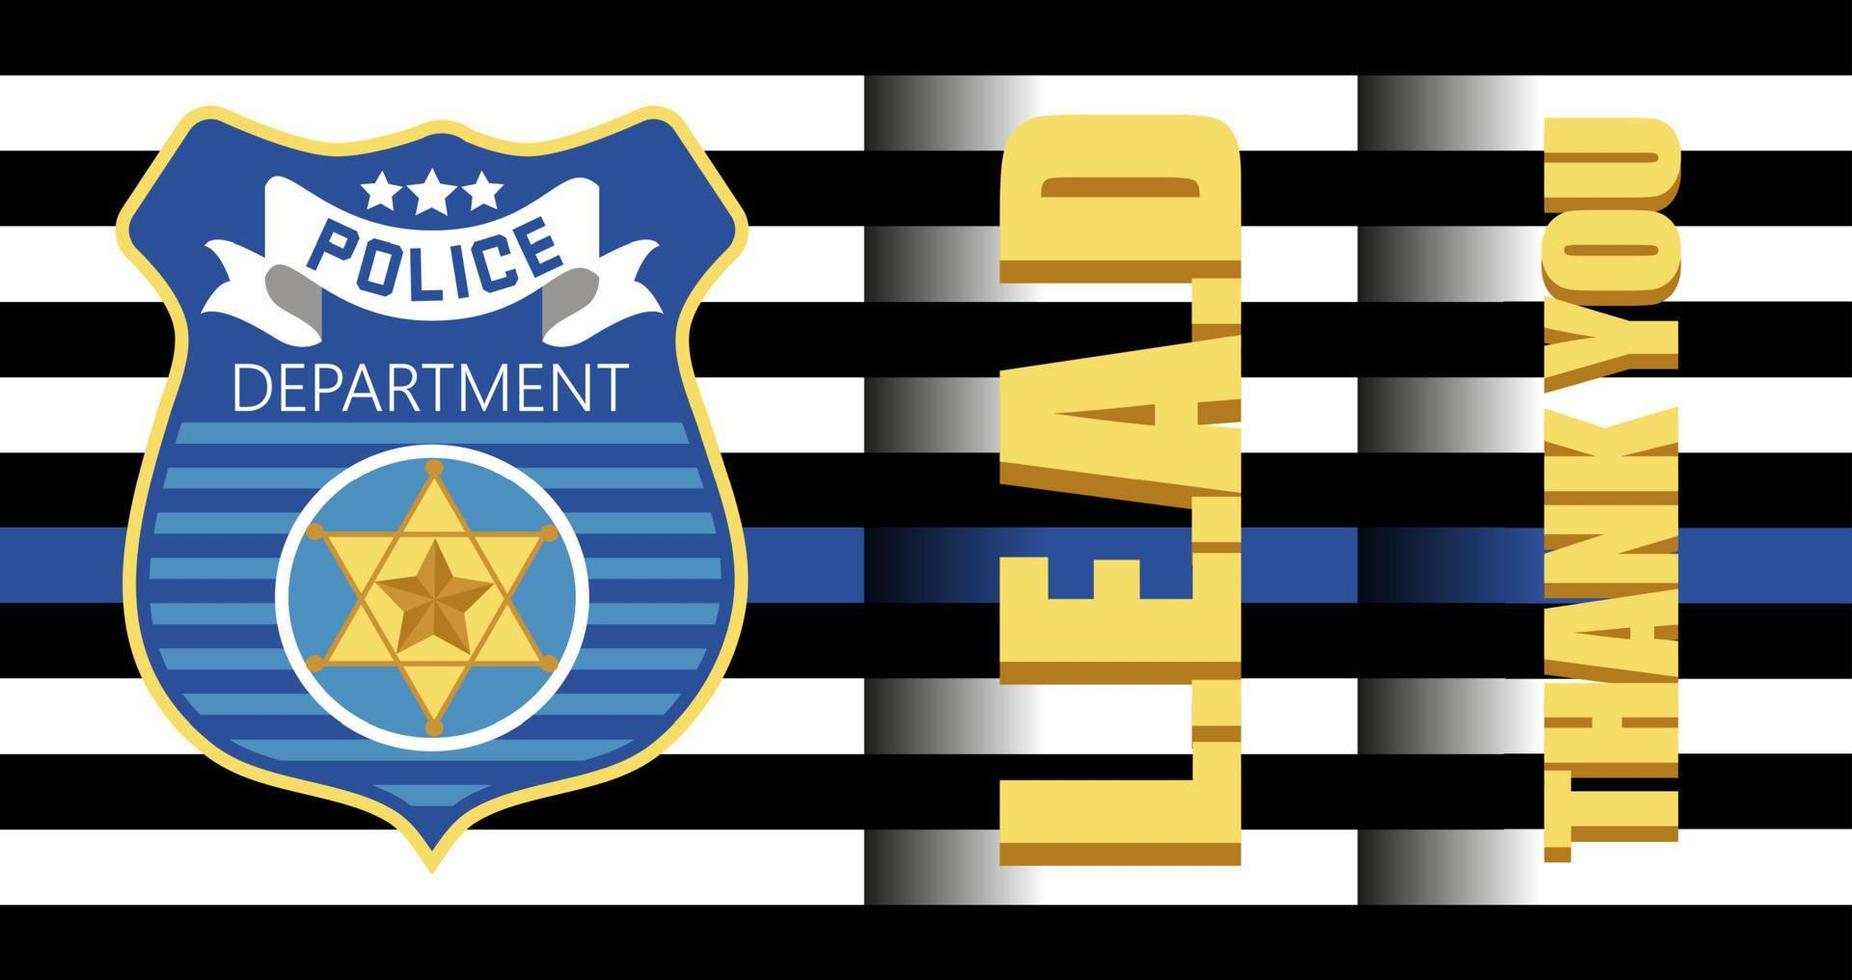 El día de apreciación de las fuerzas del orden público se celebra en EE. UU. el 9 de enero de cada año. insignia del departamento de policía, se muestra el escudo del sheriff. vector plano con volante, tarjeta, web, banner